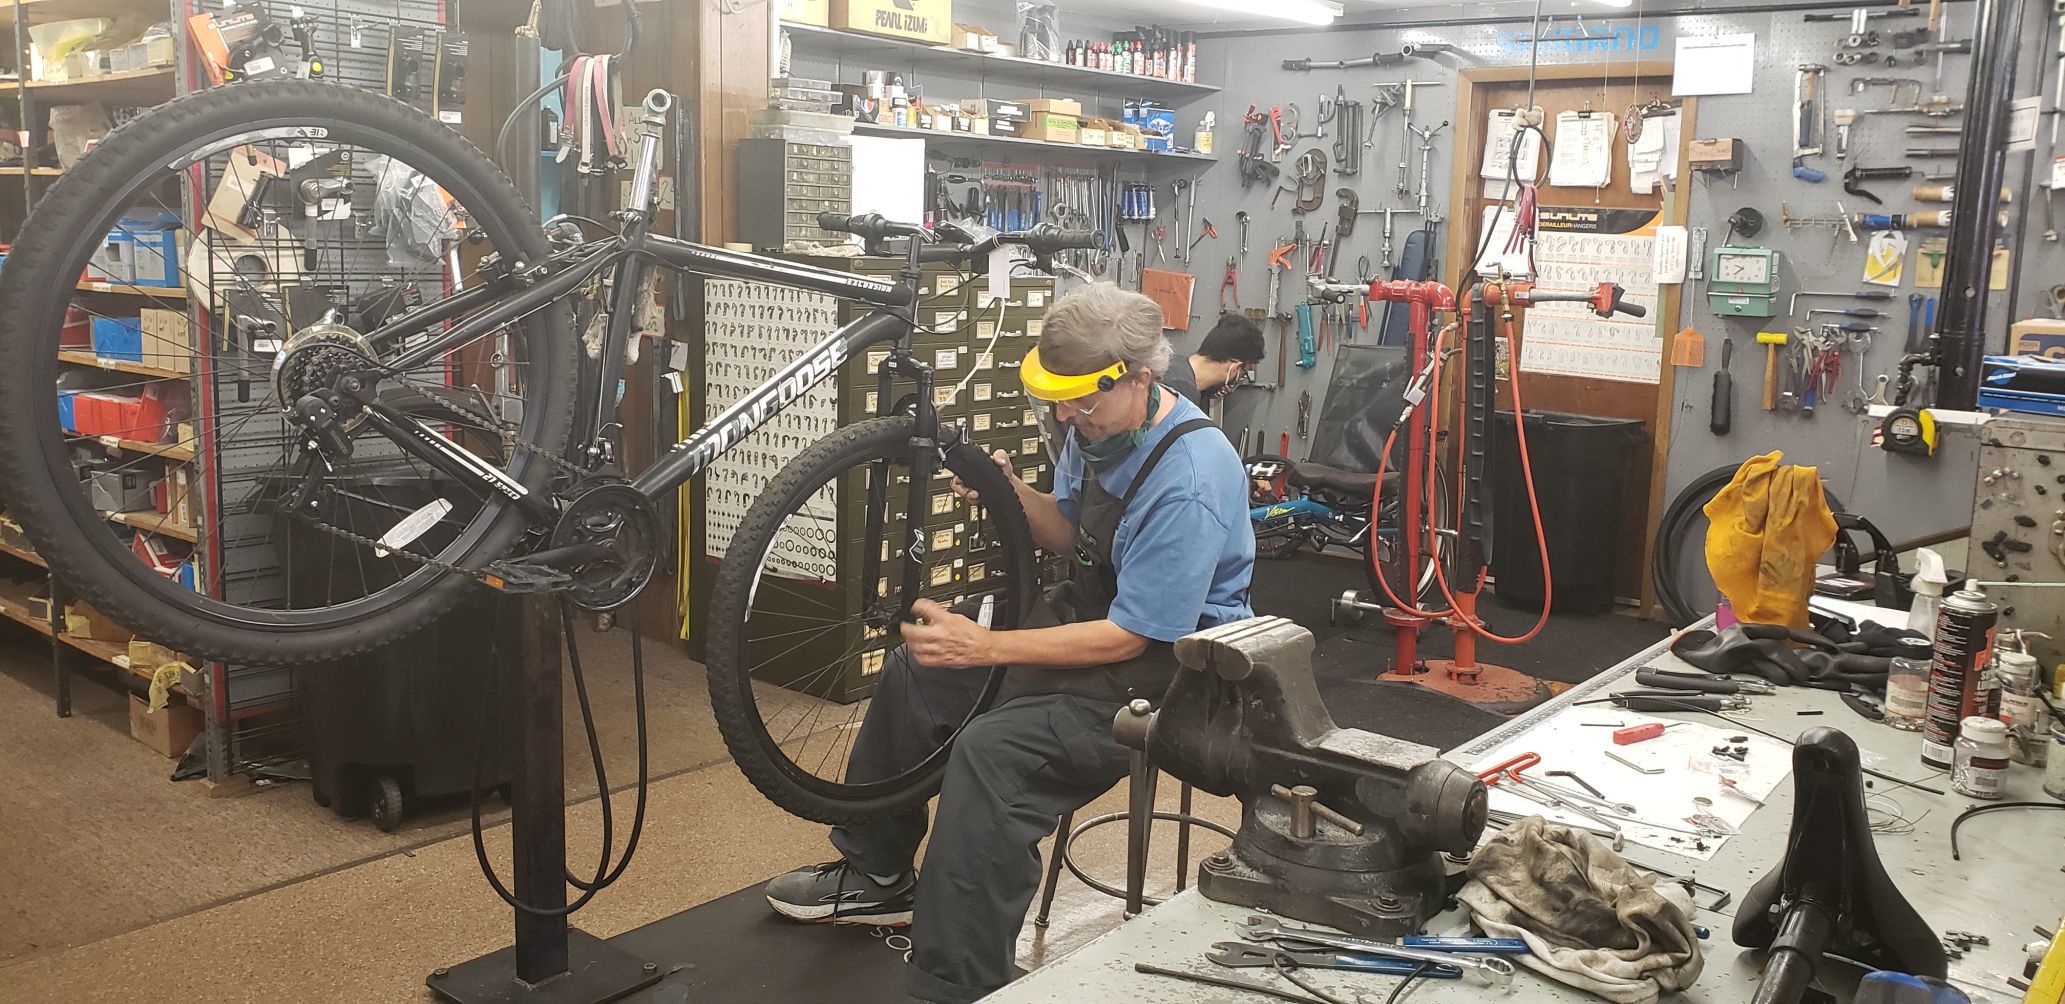 bicycle parts shop